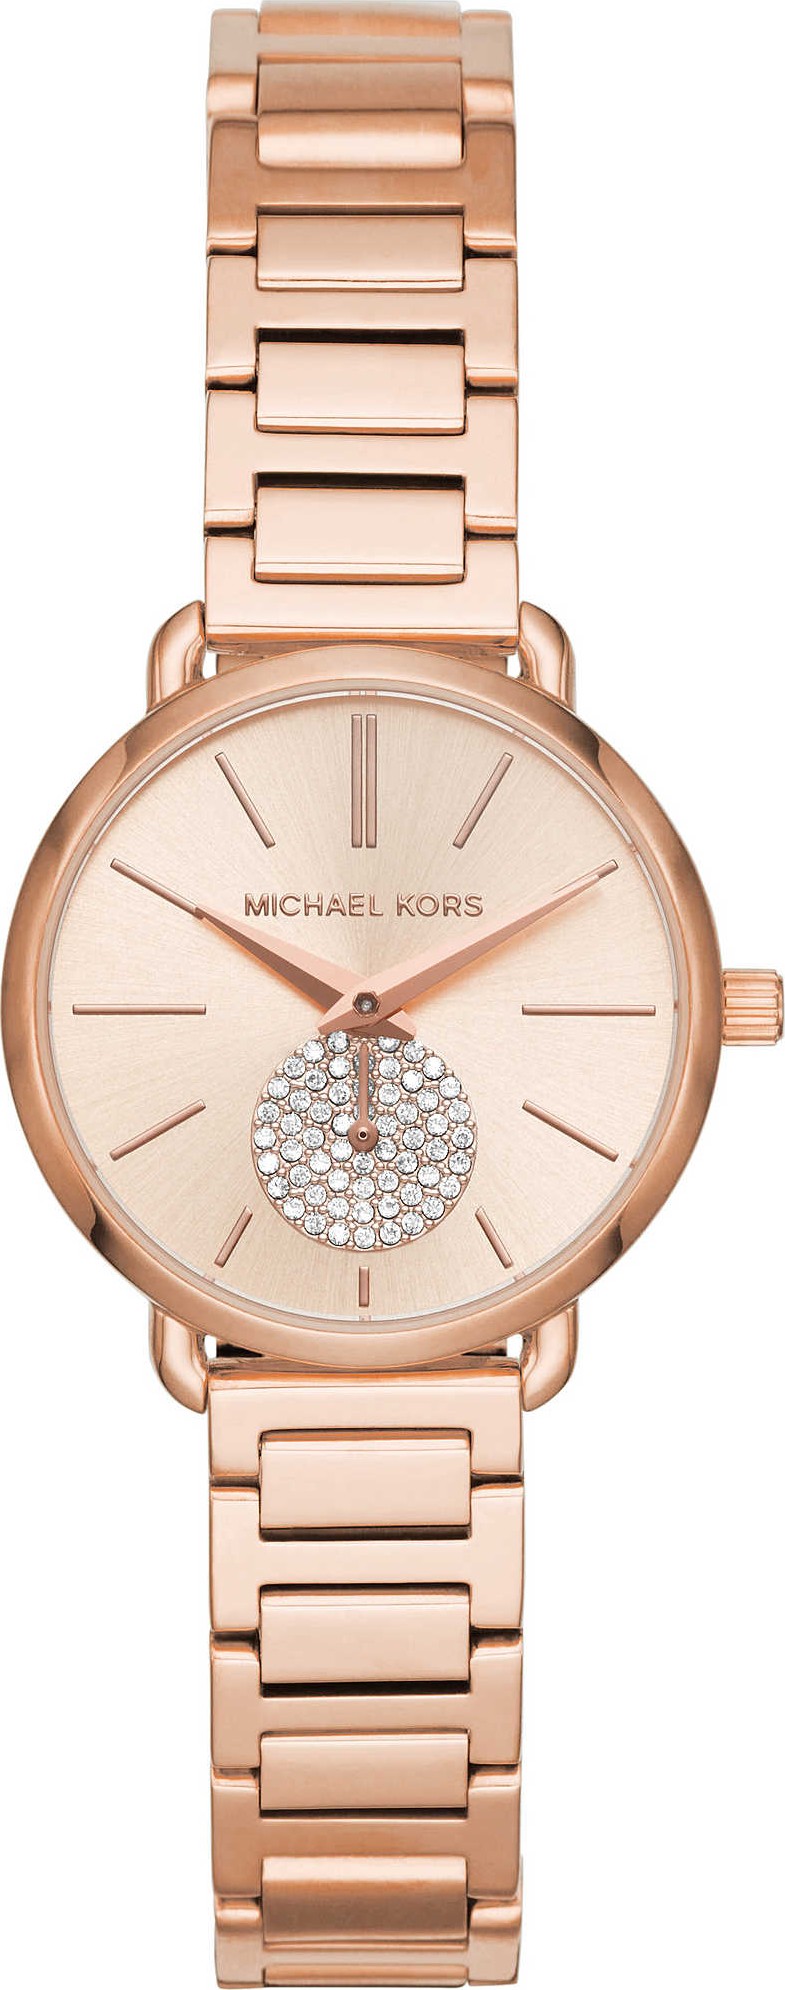 Đồng hồ nữ dây kim loại Michael kors MK6857 Mk6672 size 28mm fullbox   chống nước  vỏ thép không gỉ  đồng hồ nữ cao cấp  Lazadavn